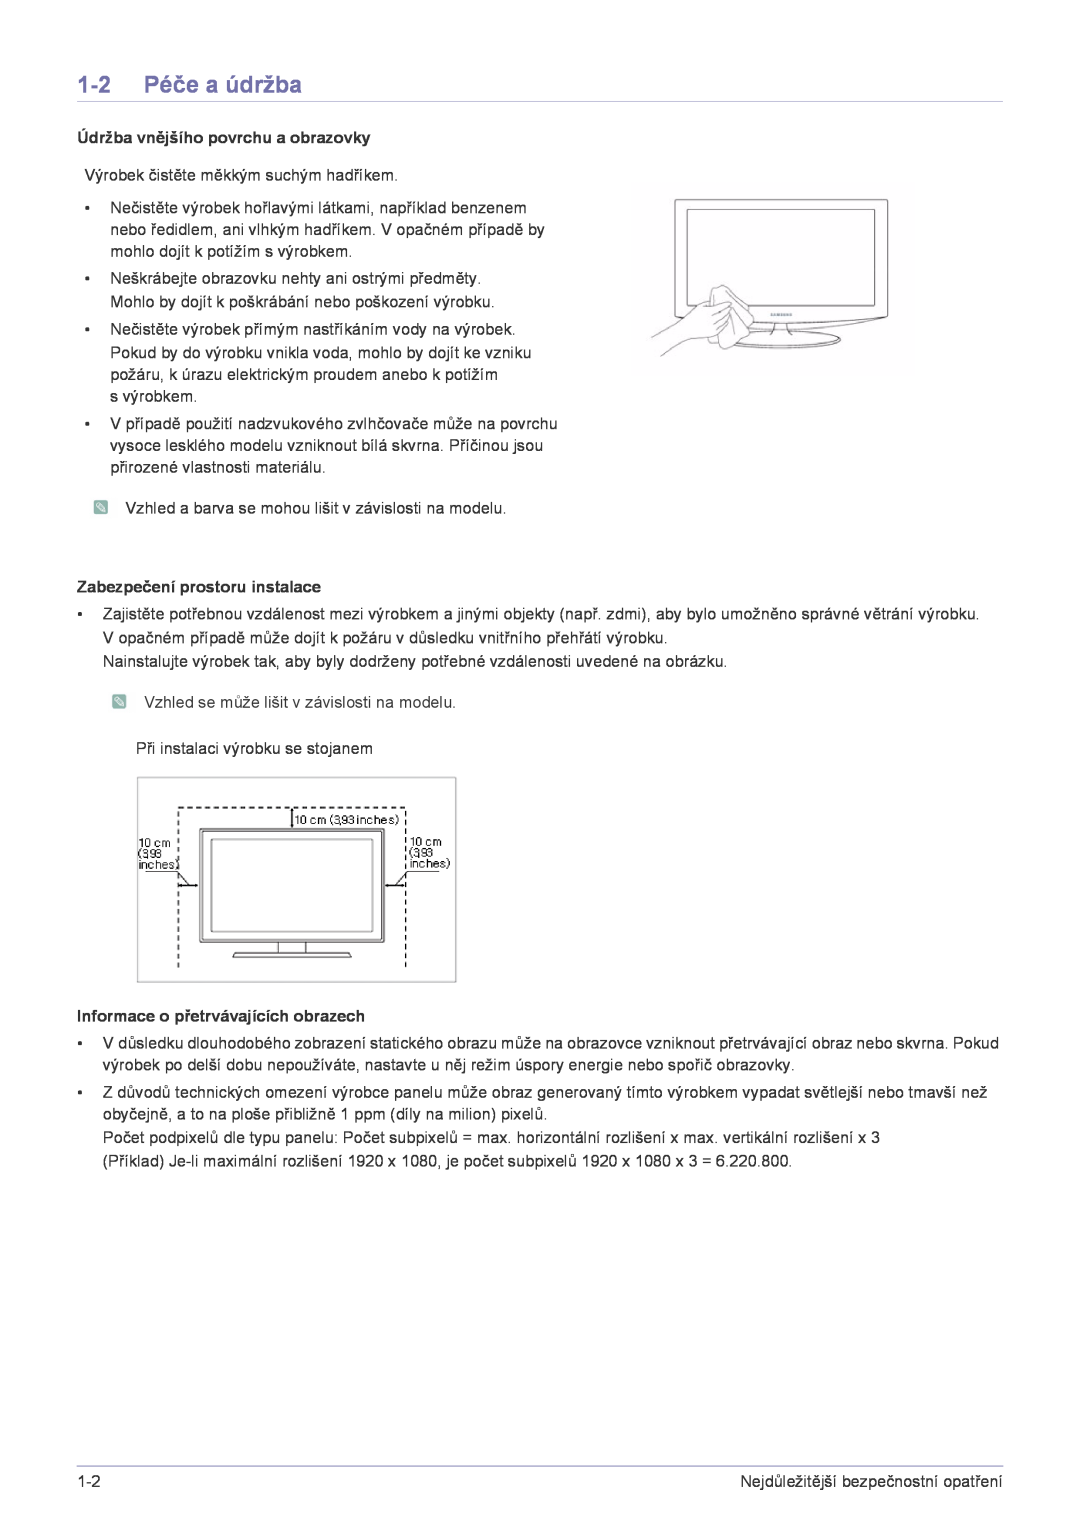 Samsung LS22X3HKFE/EN manual 1-2 Péče a údržba, Údržba vnějšího povrchu a obrazovky, Zabezpečení prostoru instalace 